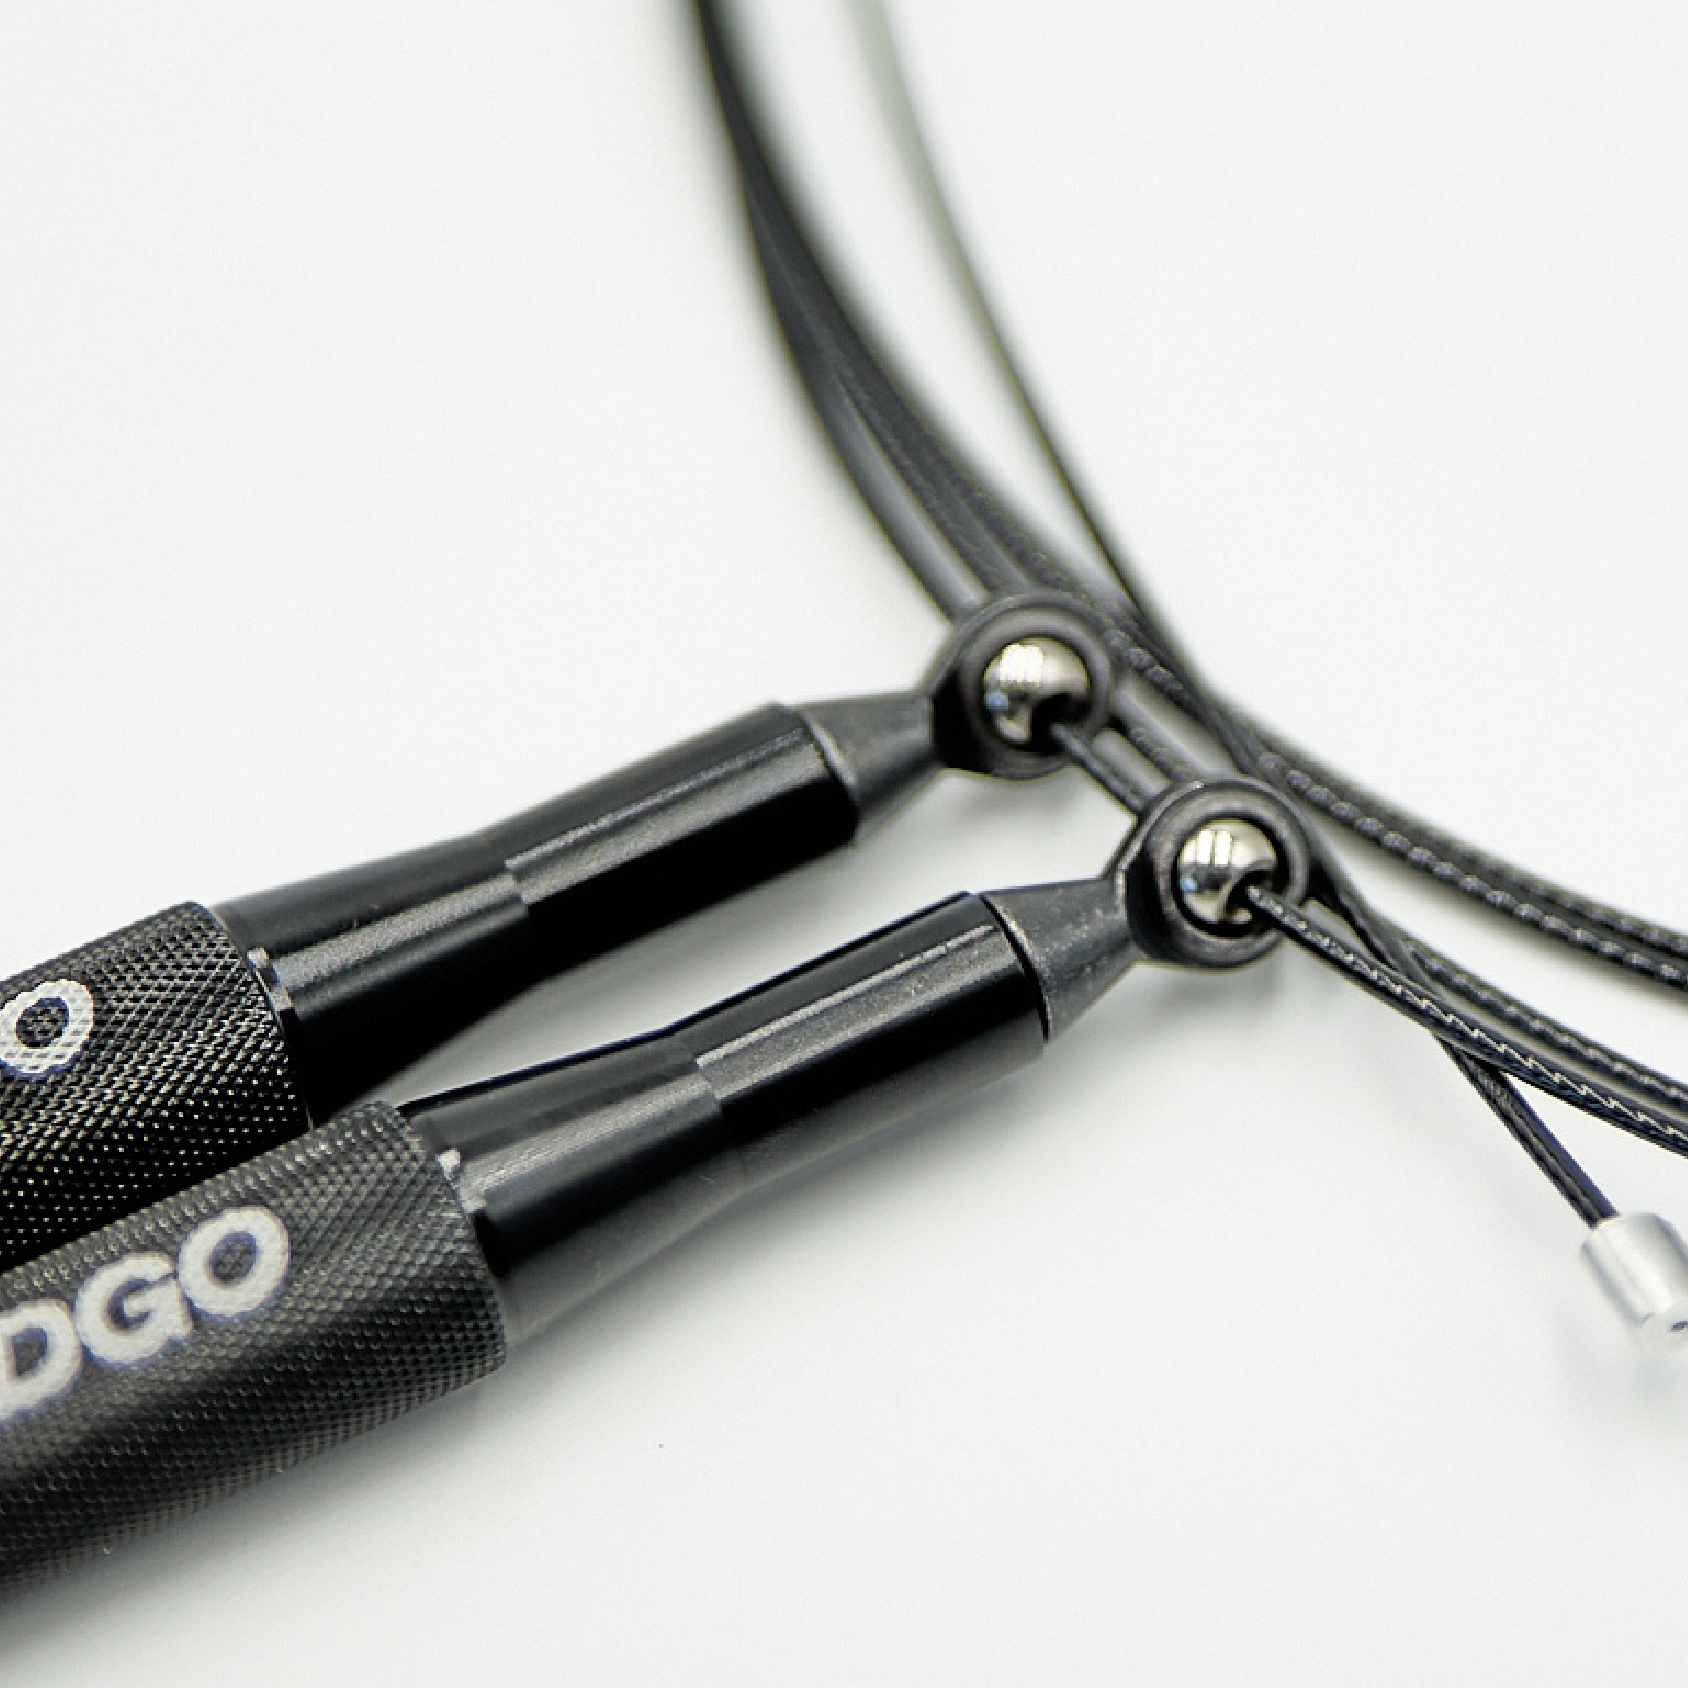 Odin Cable Crossfit Corde à Sauter Noir Long Handle 300cm